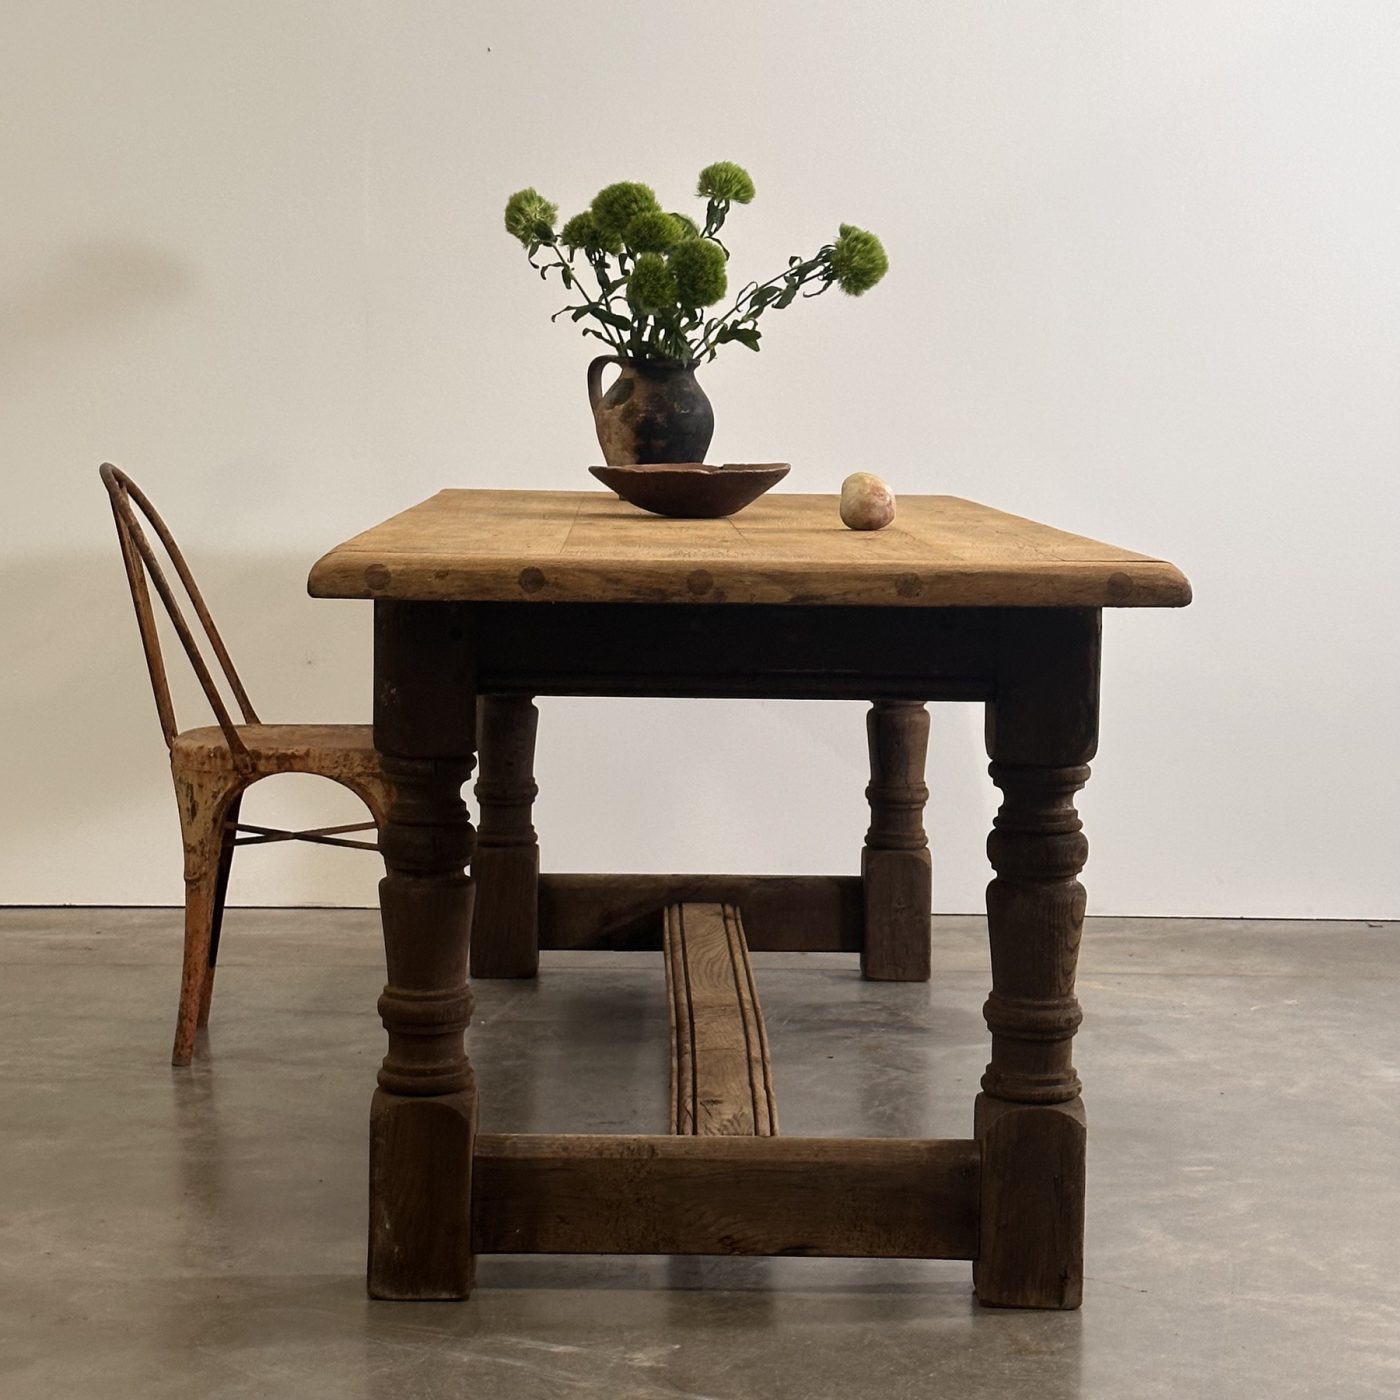 objet-vagabond-oak-table0001